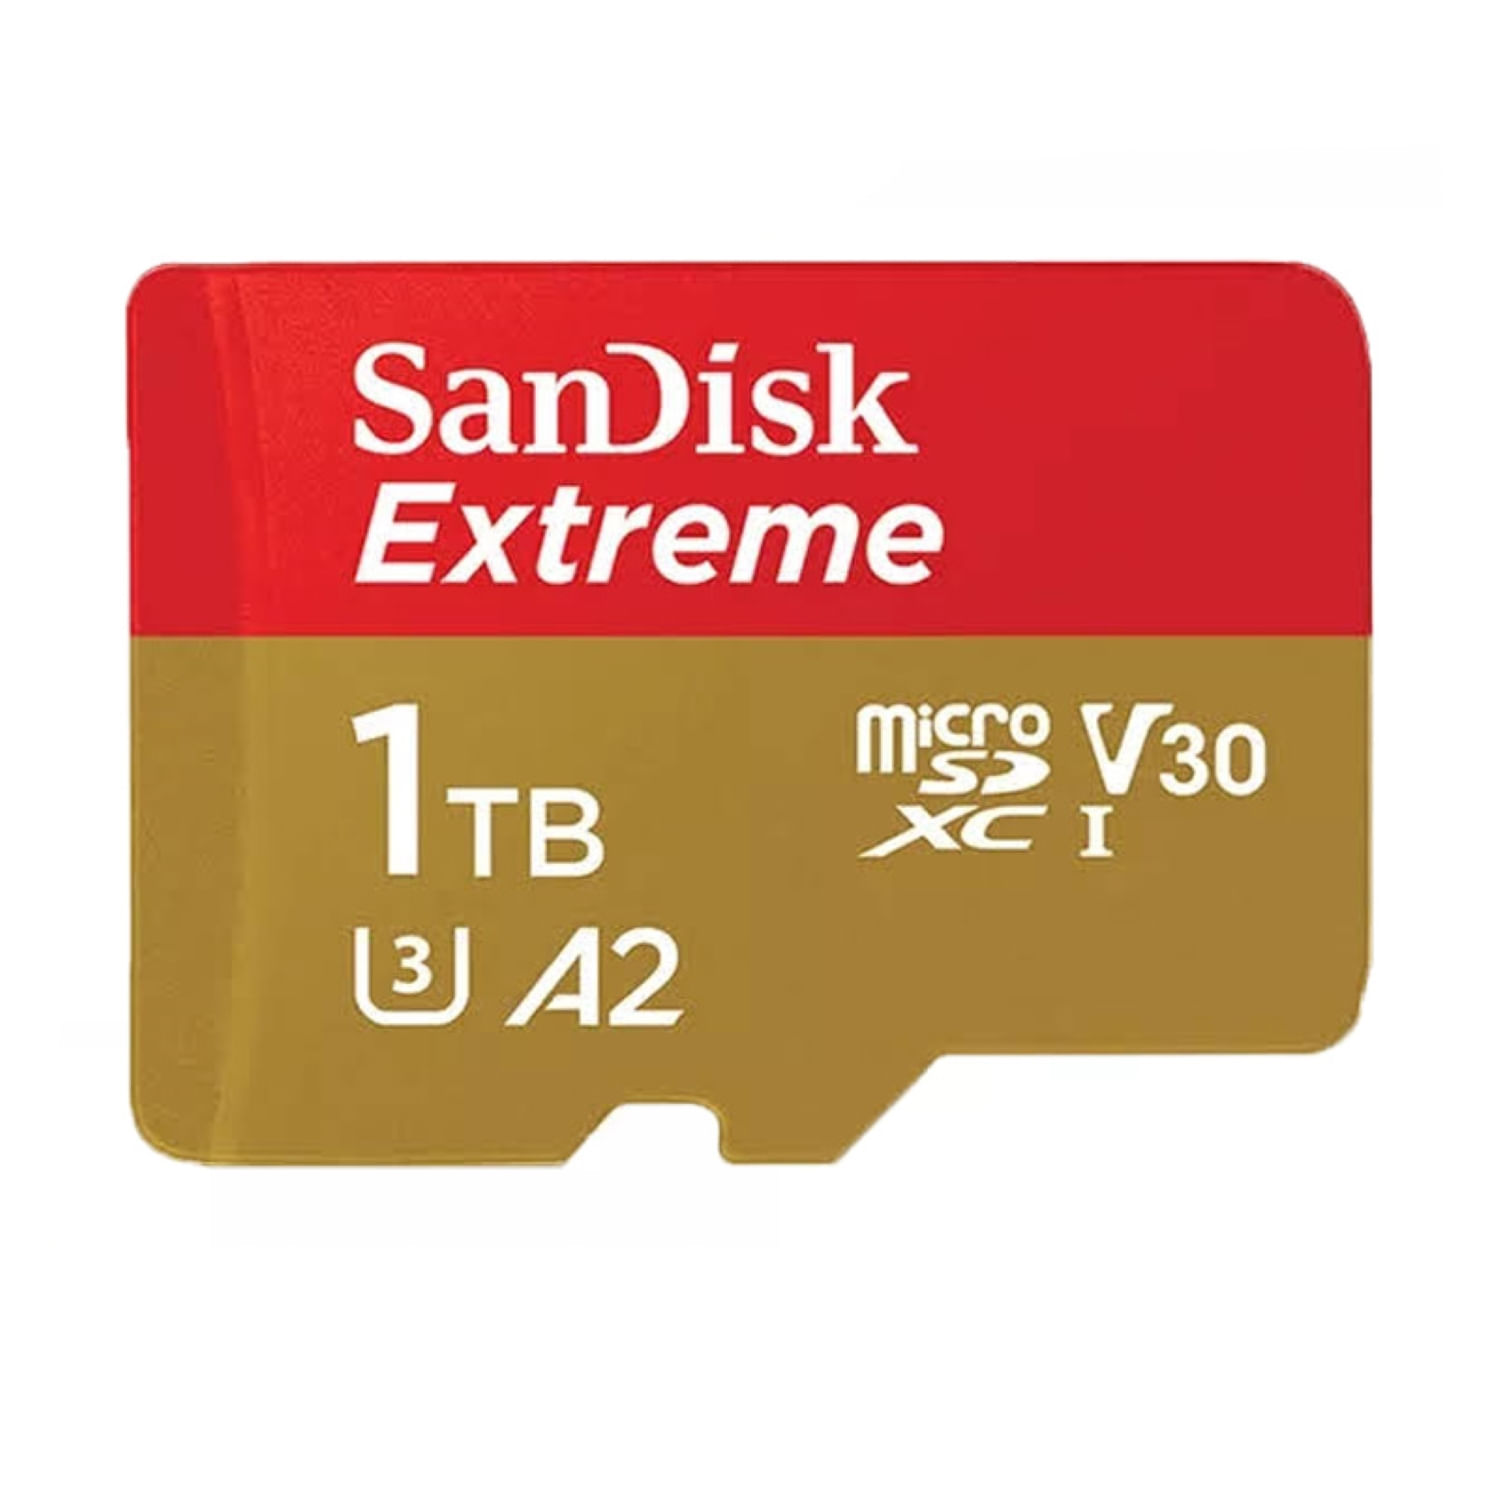 Memoria MicroSD Sandisk Extreme 1Tb UHS-I U3 A2 V30 4K